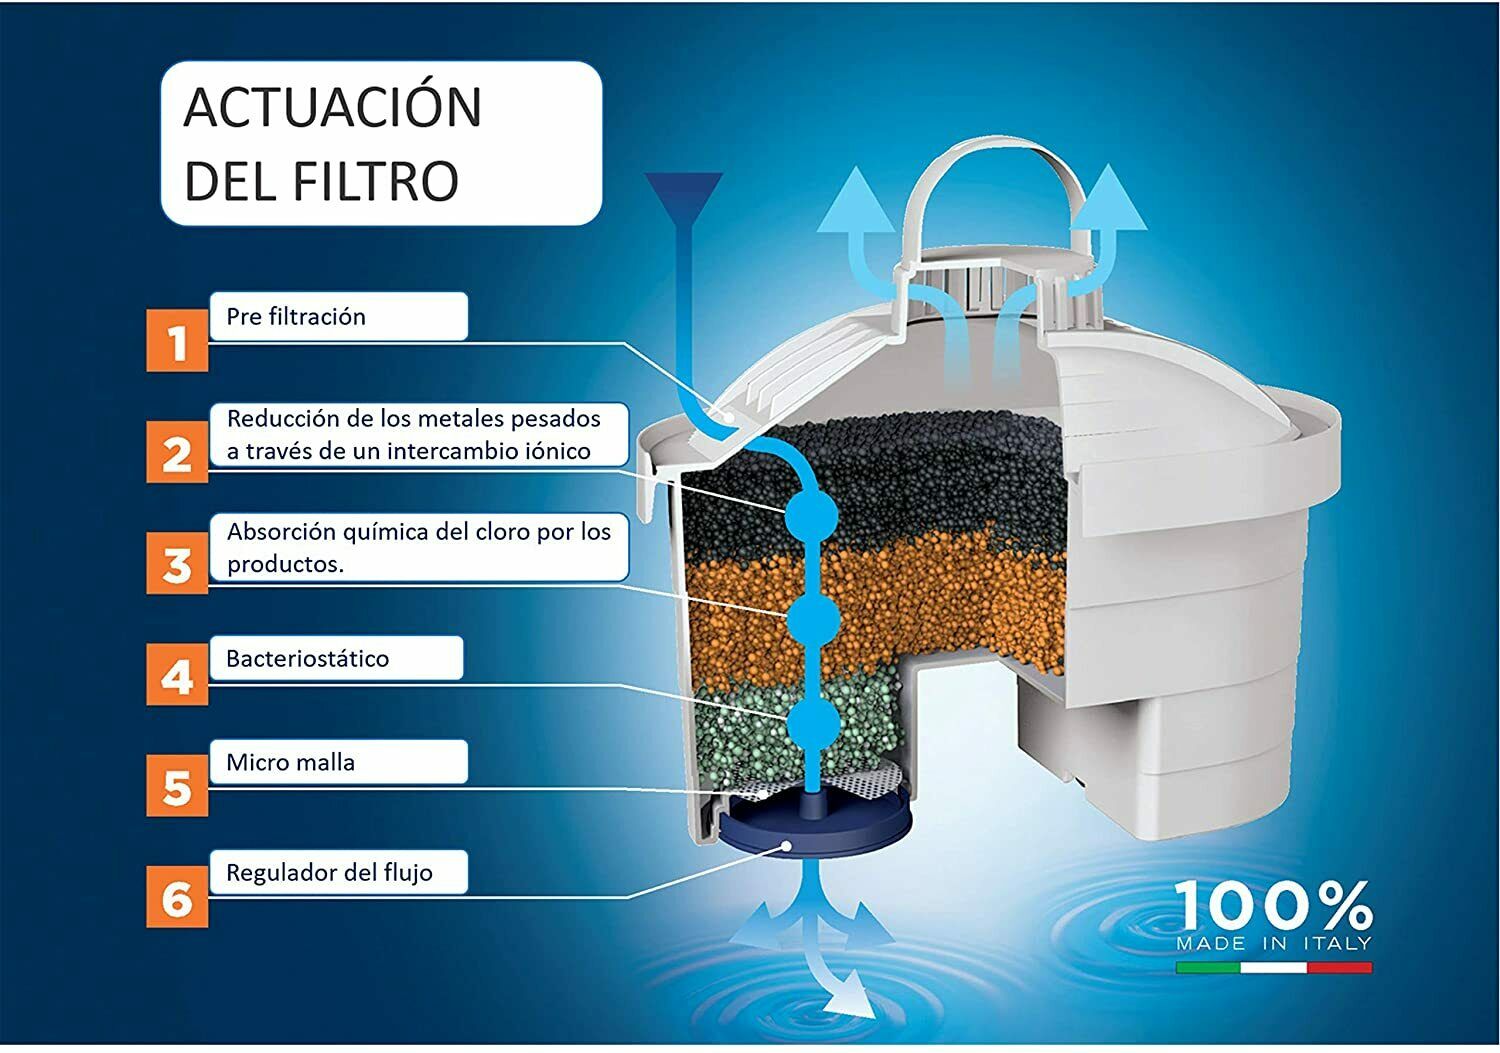 Caraffa filtrante Laica J996 Stream Line + 6 filtri di ricambio, 6 mes –